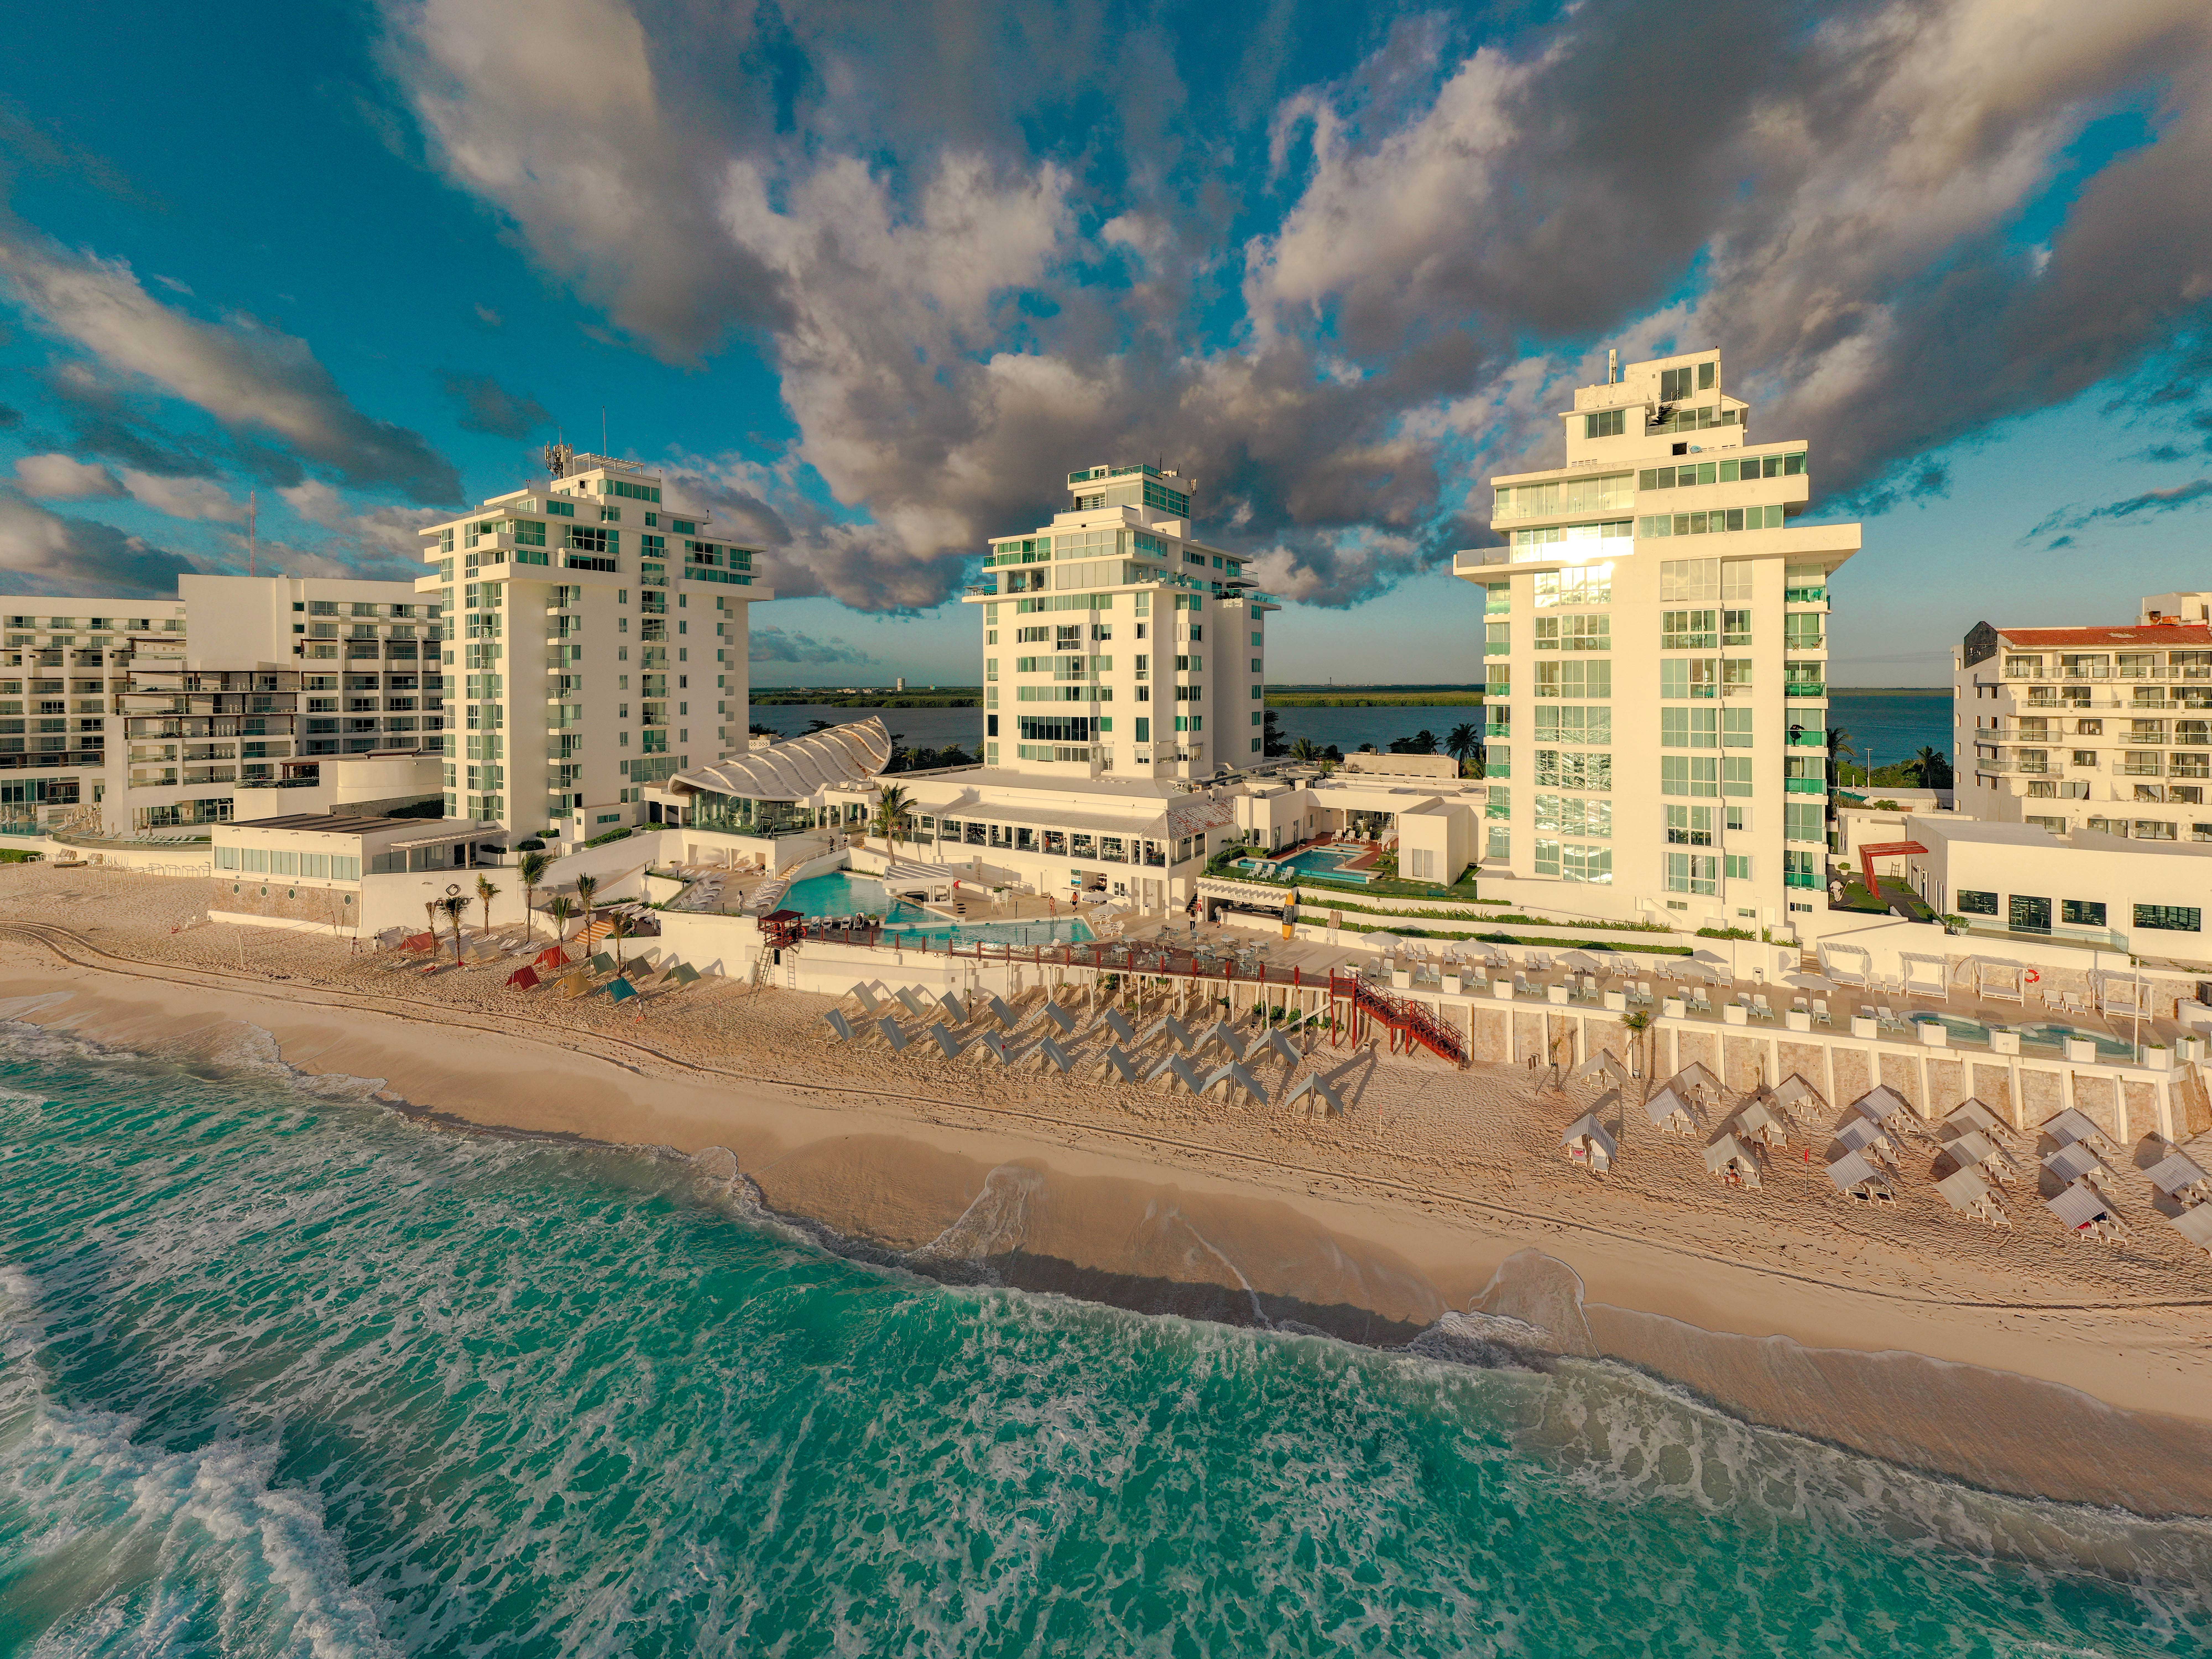 ÓLEO Cancún Playa recibe el “Distintivo H” por cumplir con máxima higiene